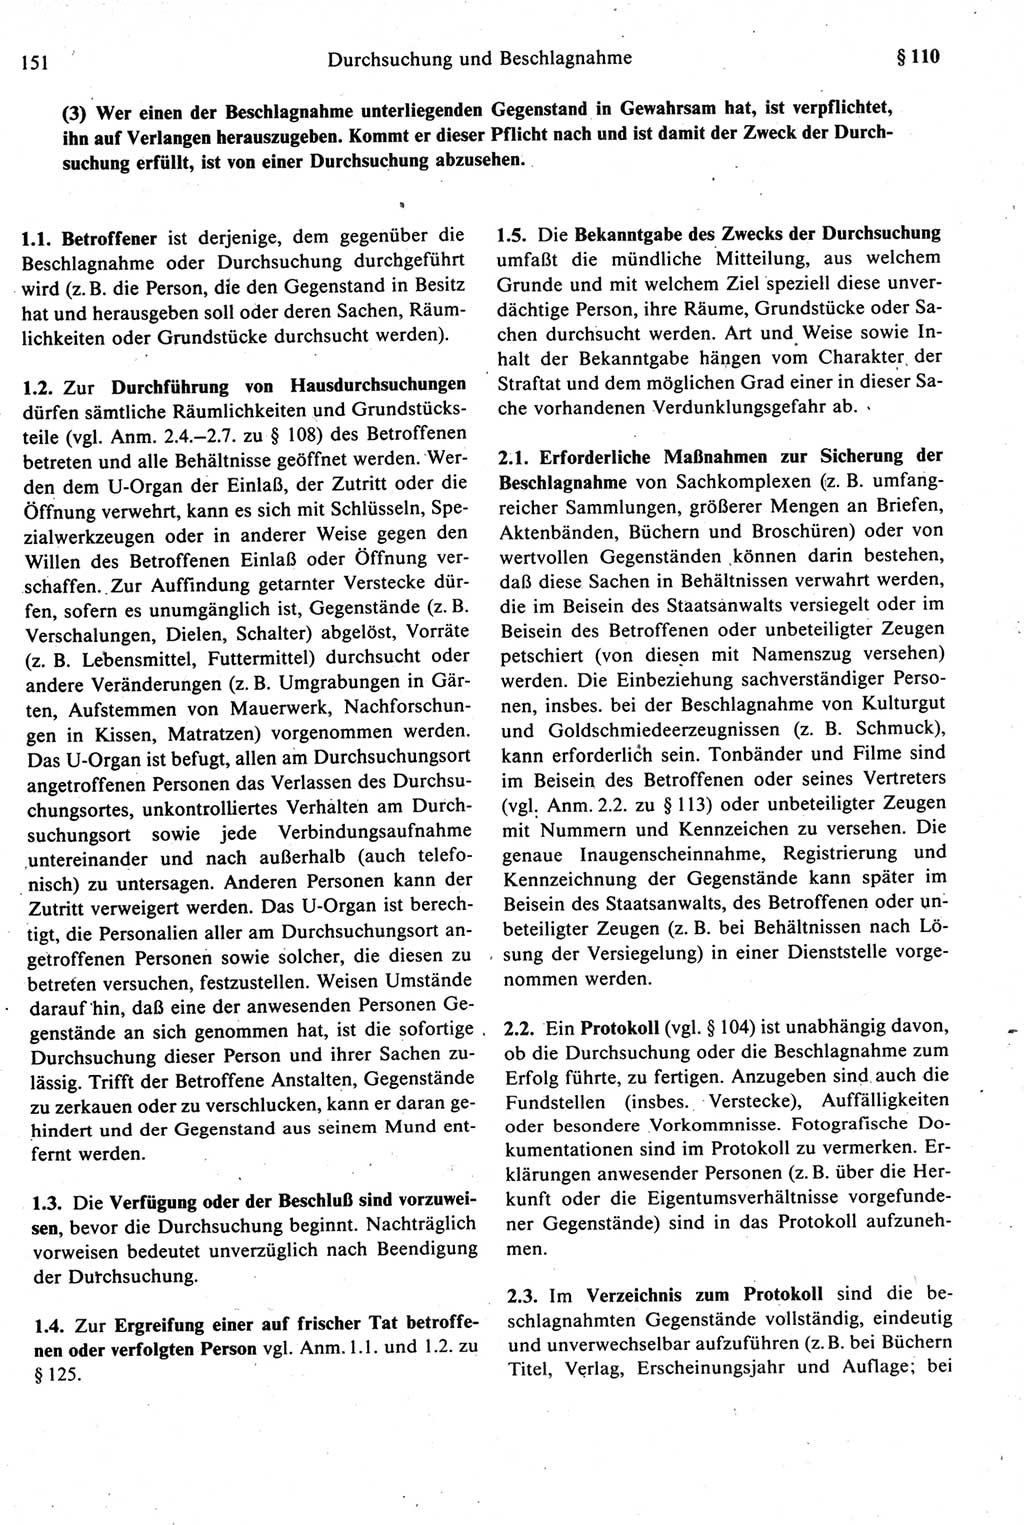 Strafprozeßrecht der DDR [Deutsche Demokratische Republik], Kommentar zur Strafprozeßordnung (StPO) 1987, Seite 151 (Strafprozeßr. DDR Komm. StPO 1987, S. 151)